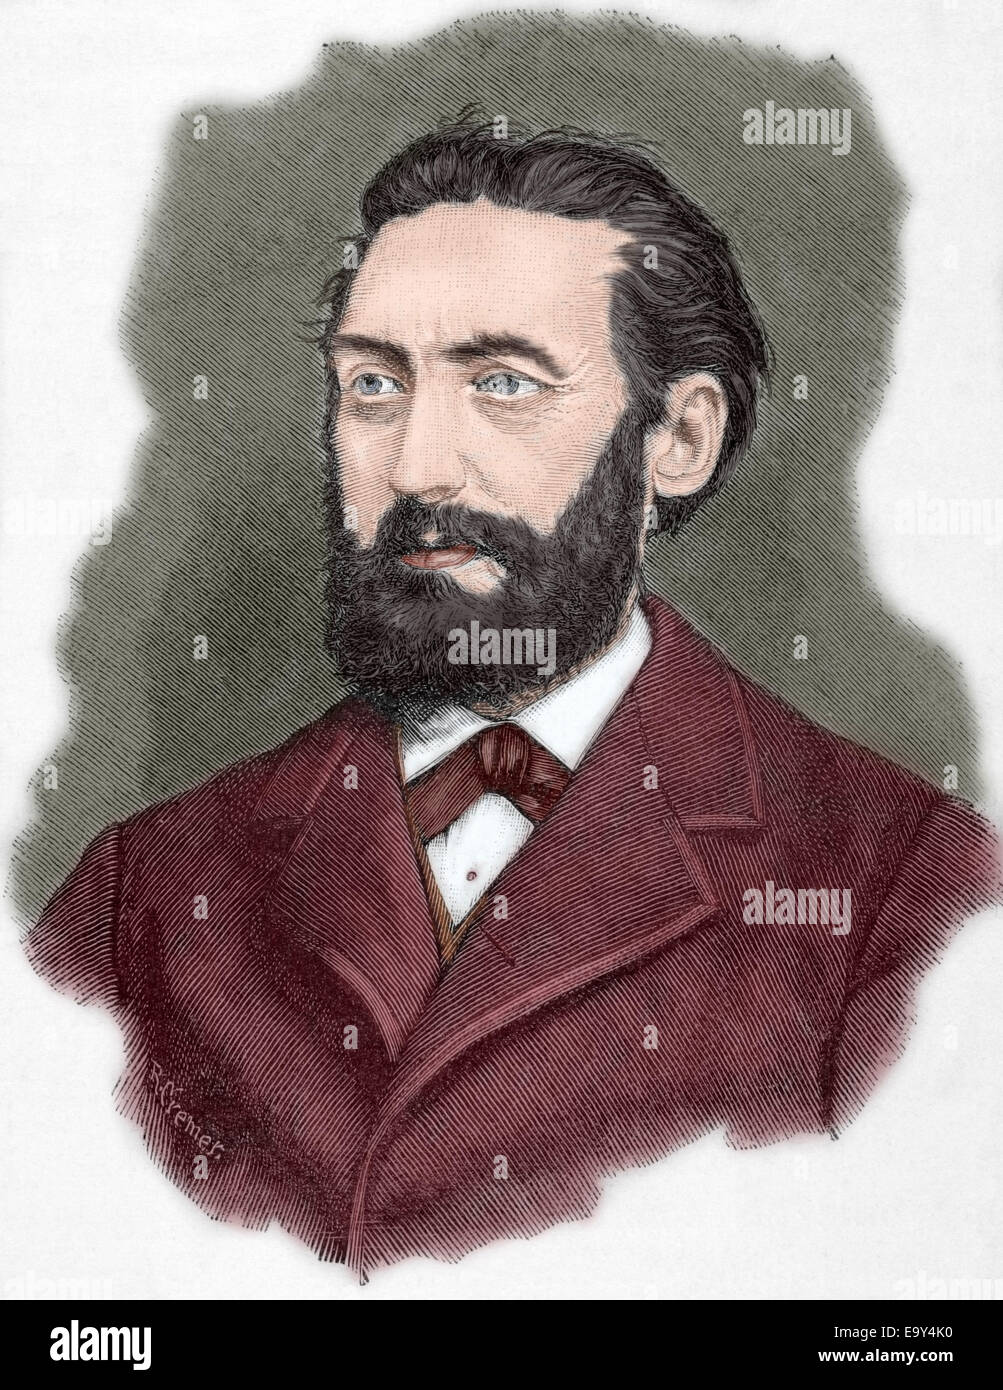 William de Kardorff (1828-1907). Homme politique prussien. La gravure. L'histoire universelle, 1885. De couleur. Banque D'Images